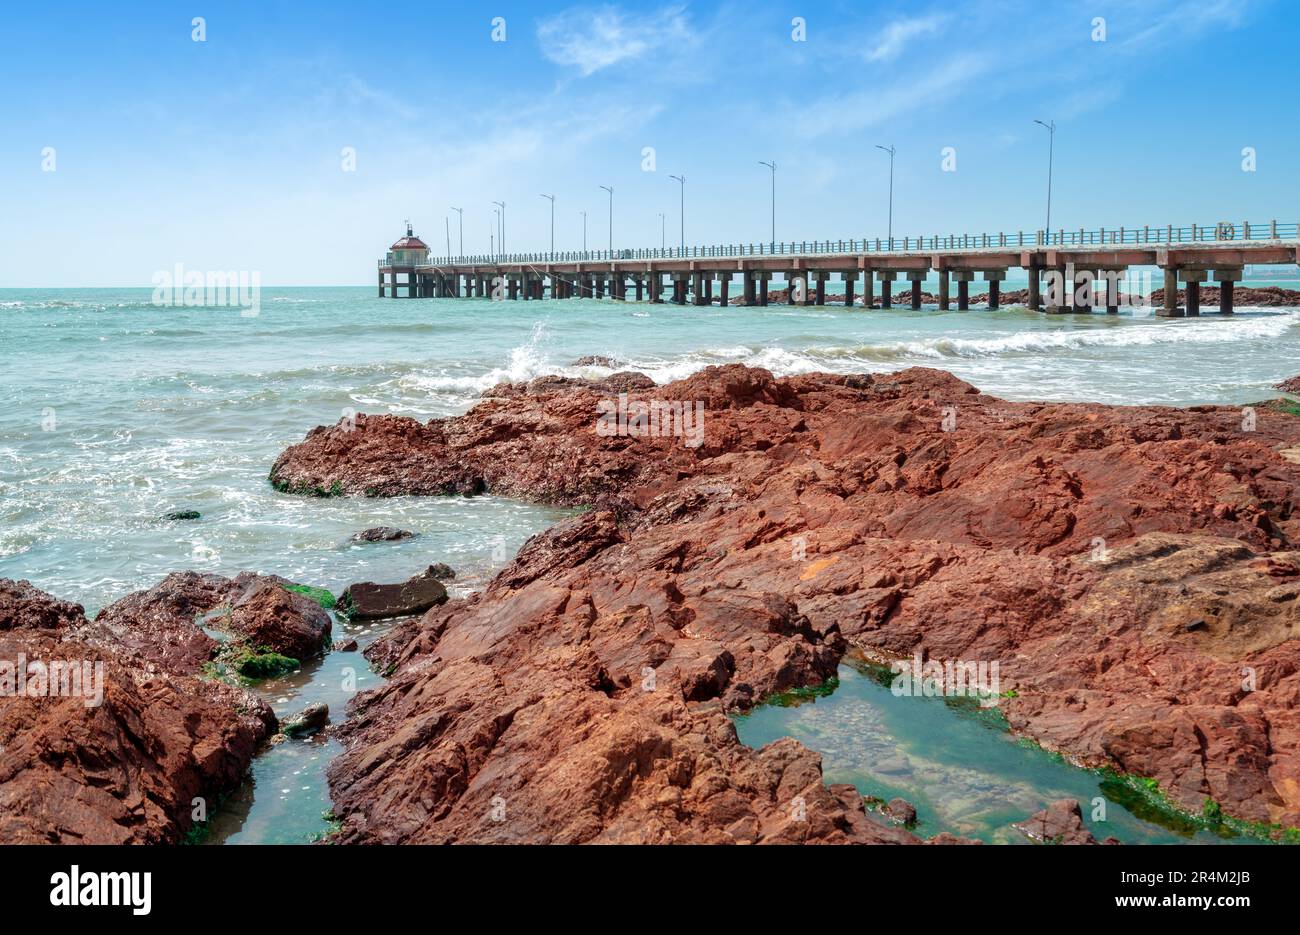 Die Baumbrücke und die roten Riffe am Meer, die natürliche Landschaft von Hainan, China. Stockfoto